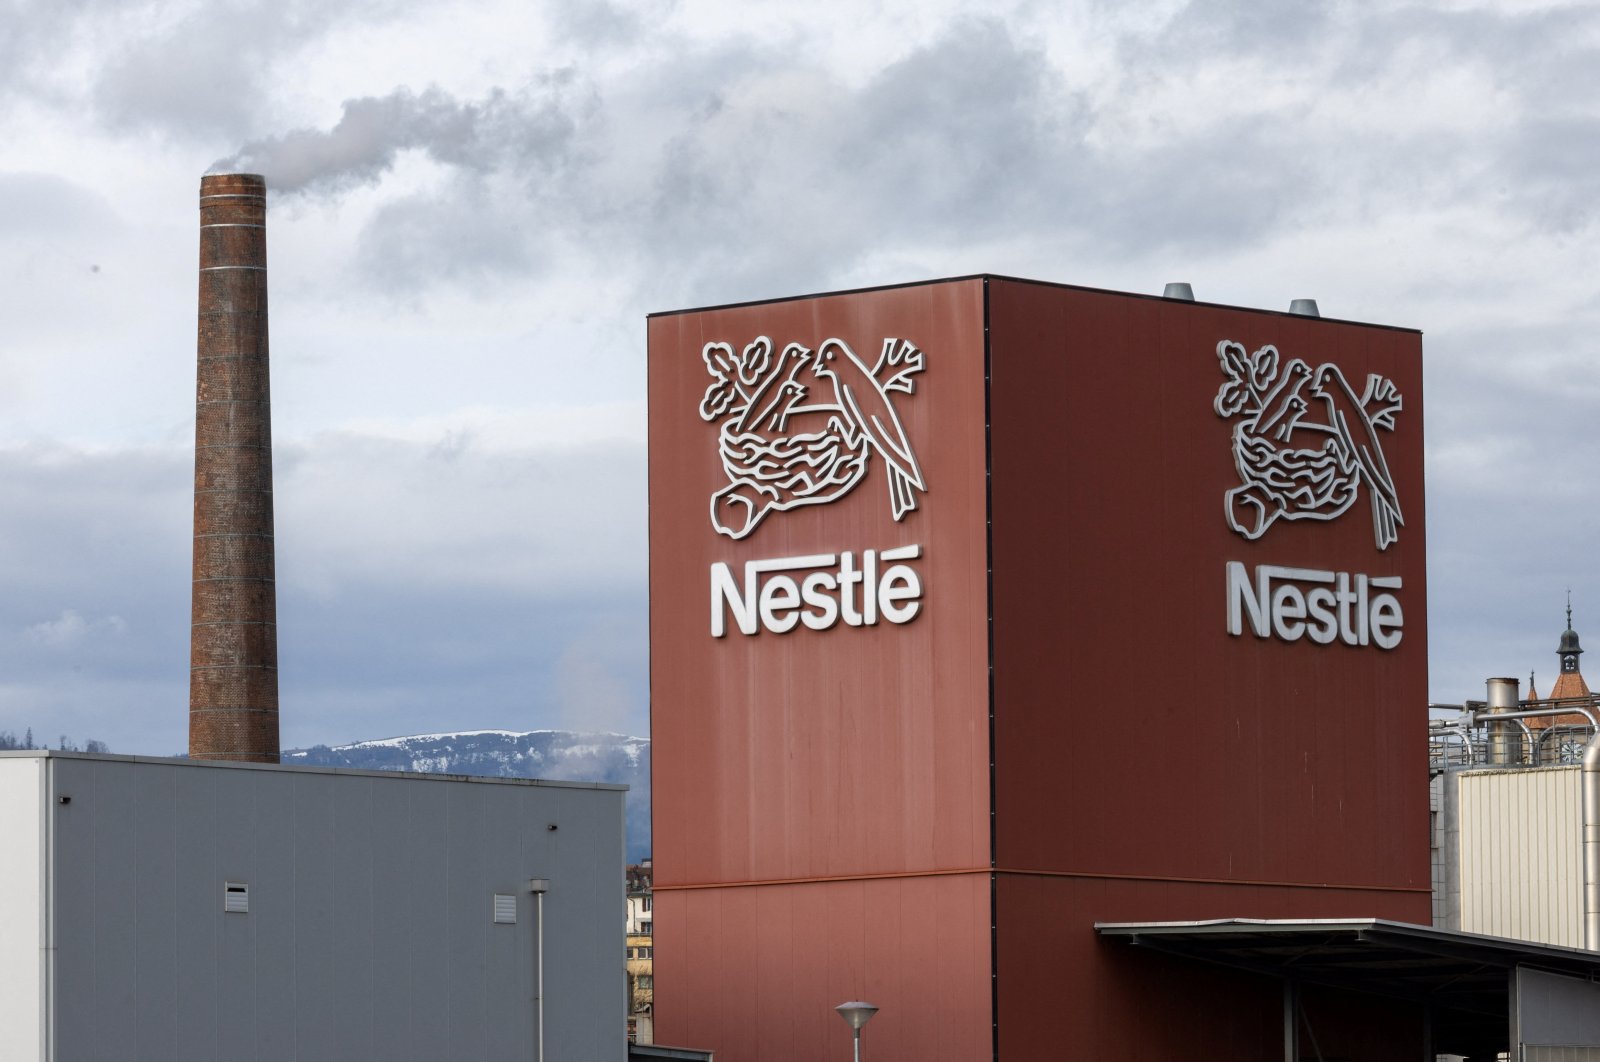 Turkish competition watchdog slaps Nestle with $11.2 million fine